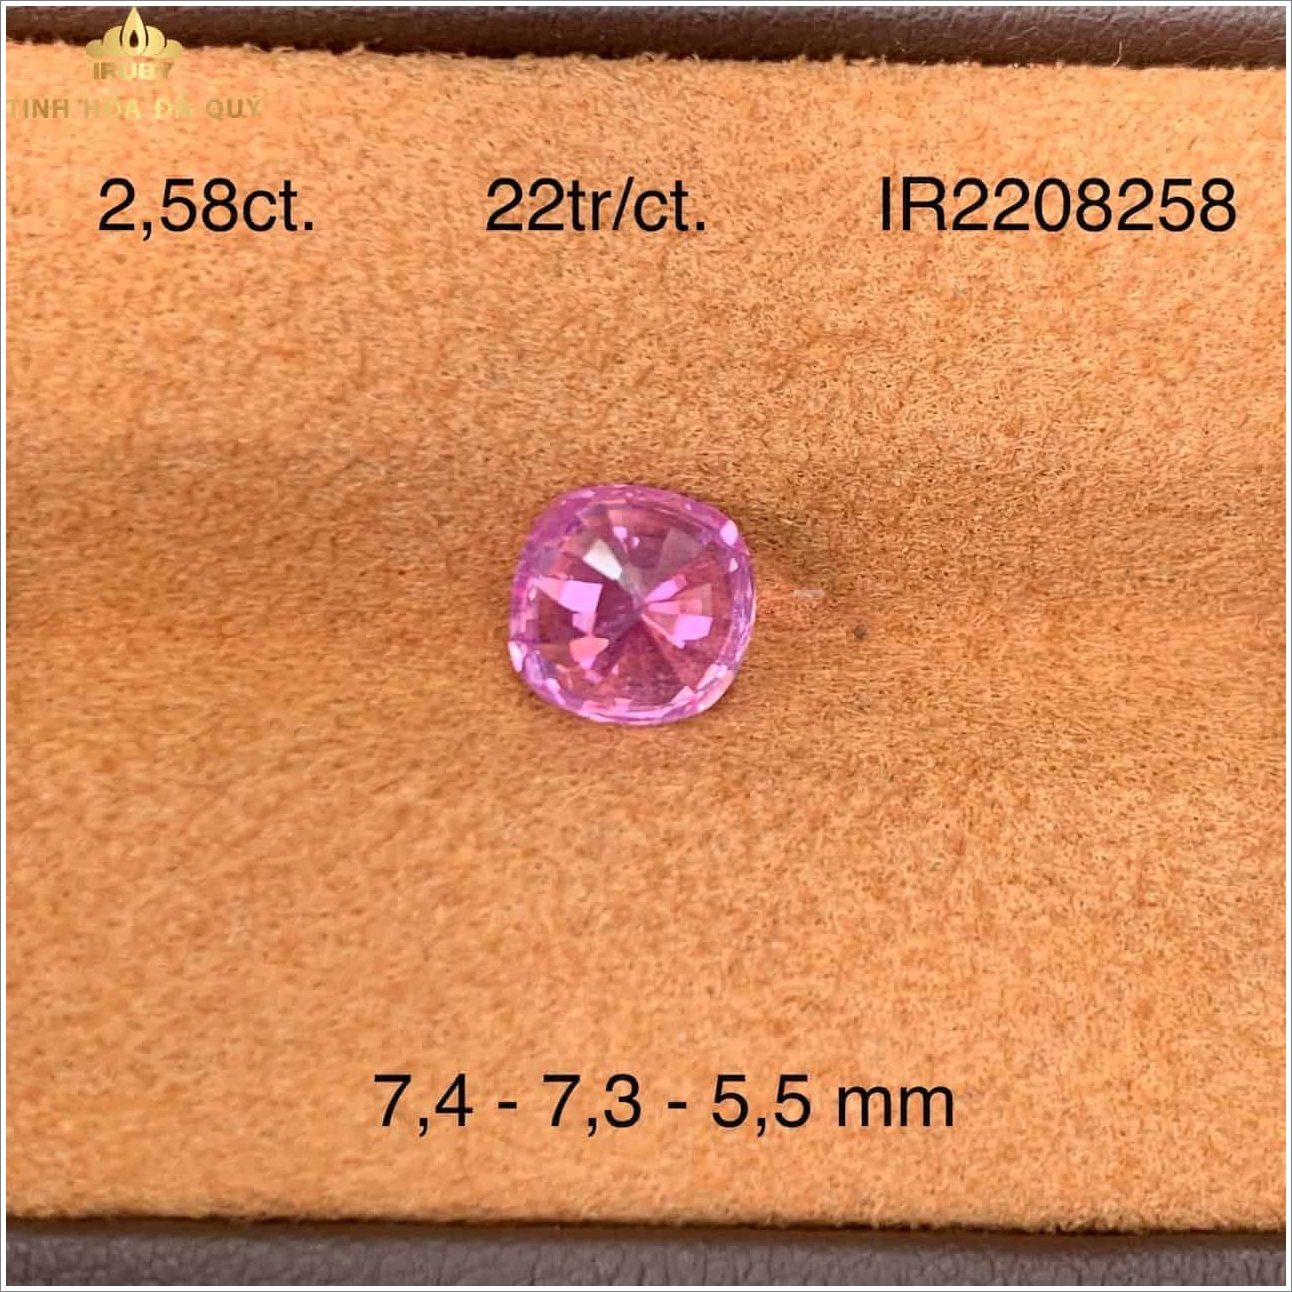 Viên Sapphire hồng chiếu bung tuyệt đẹp 2,56ct - IRSP 2208256 t hình ảnh 2